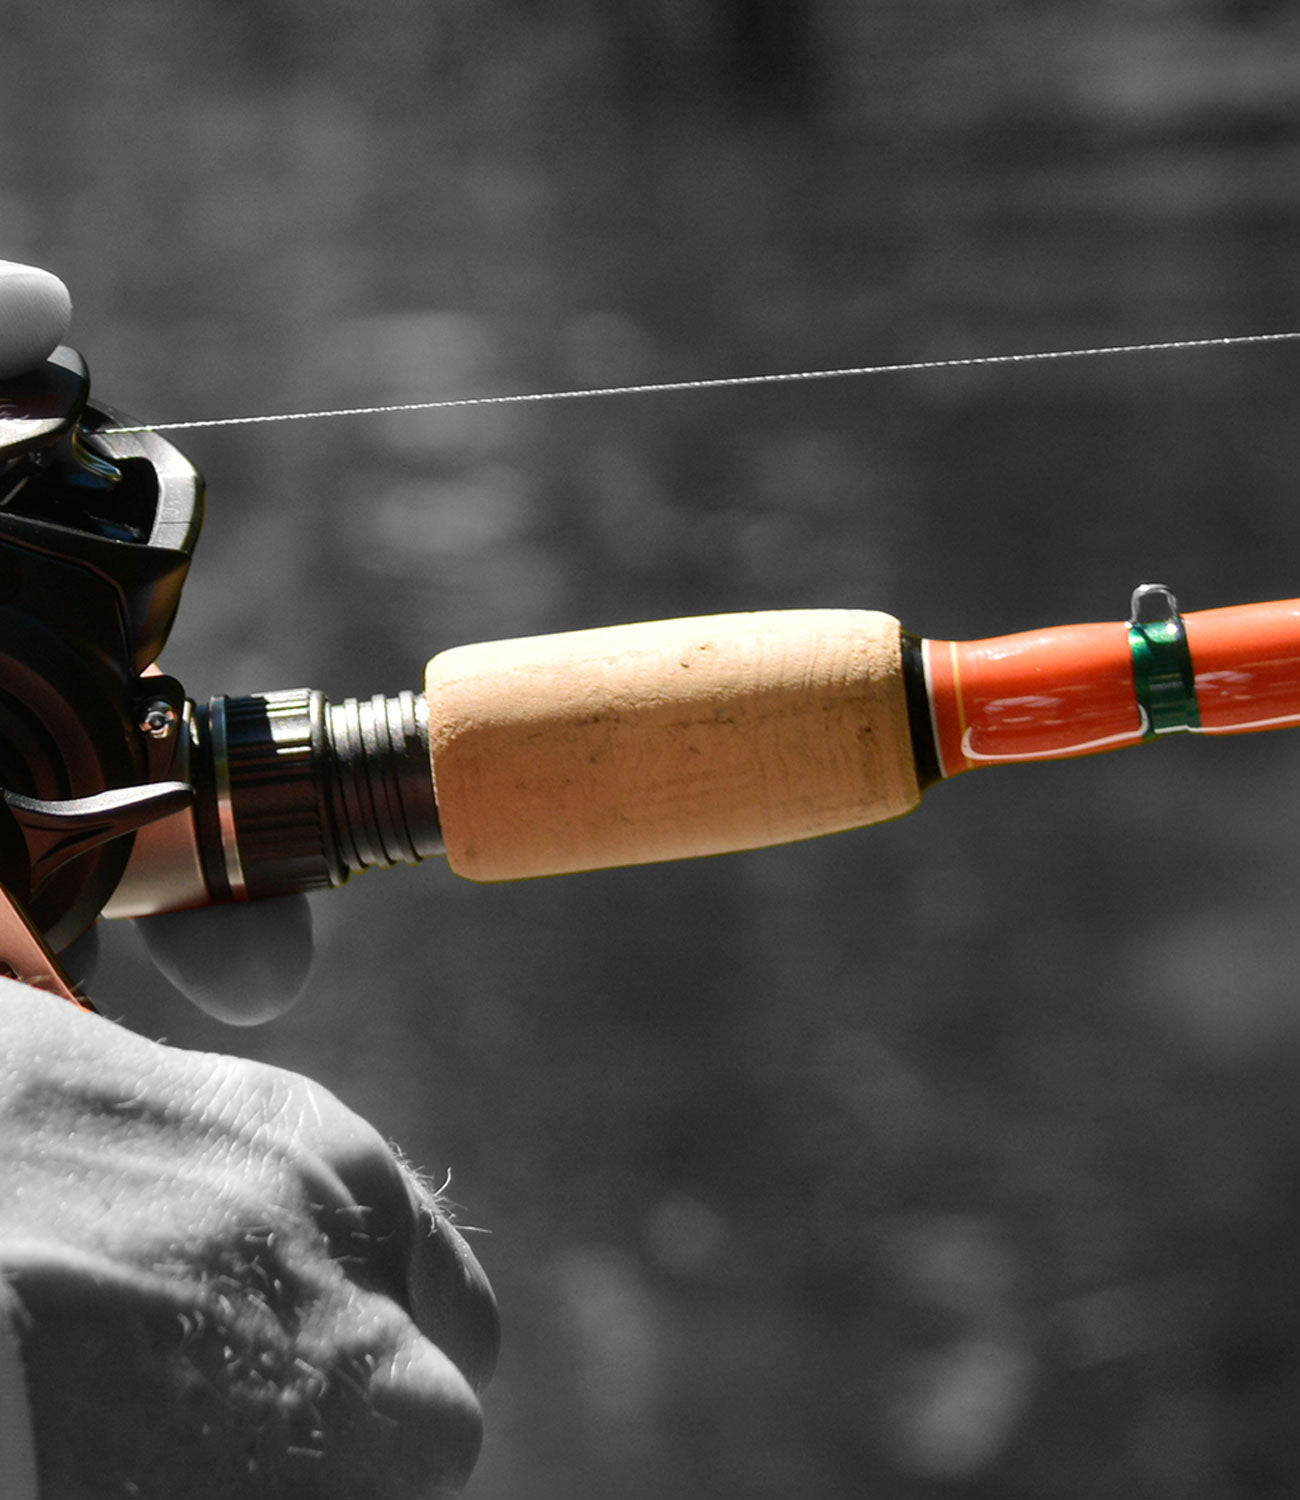 2X DIY Fishing Rod or Repair Composite Cork Handle Spinning Grip Reel